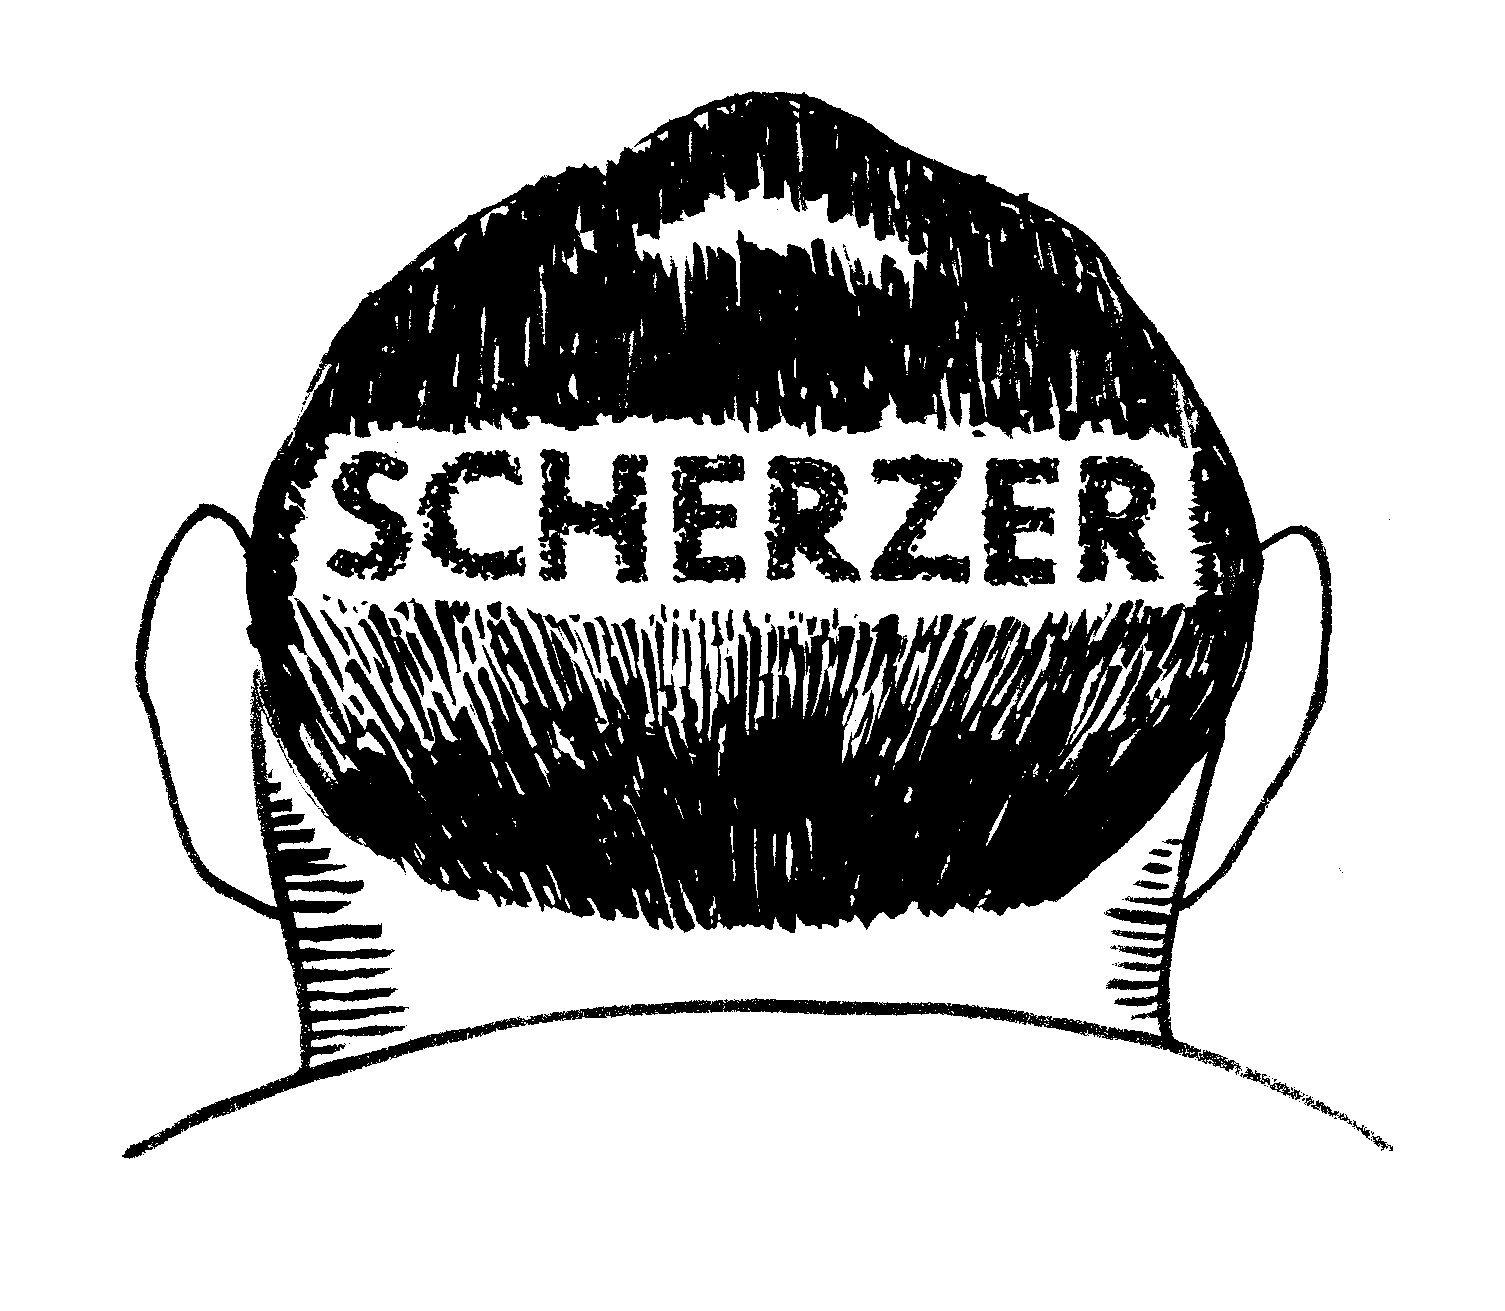 joel Scherzer